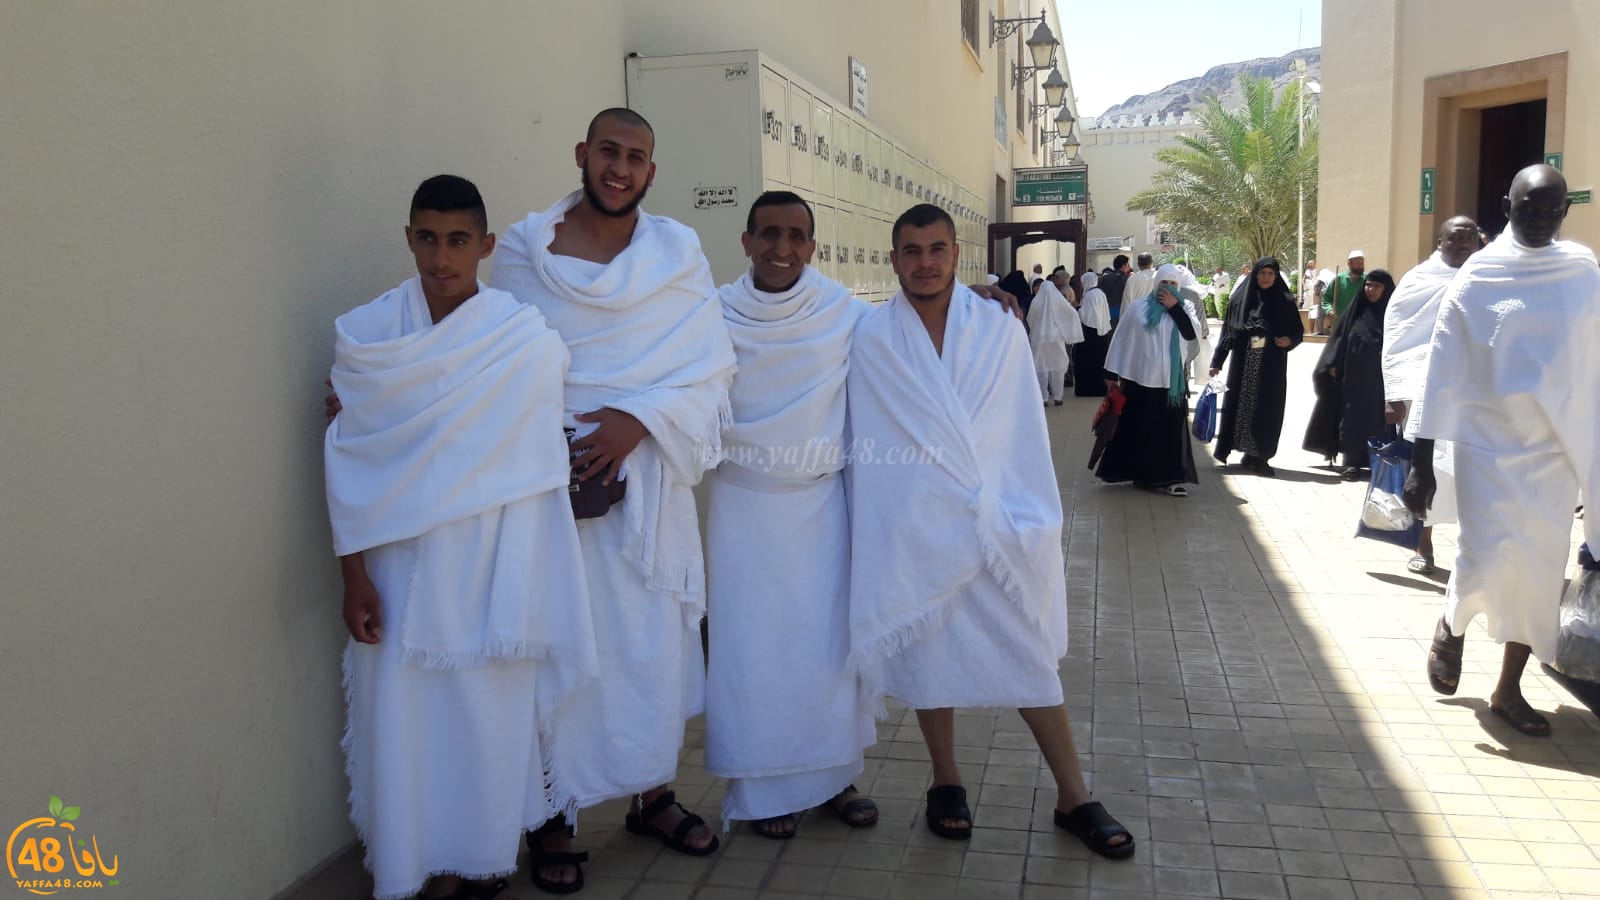 صور: معتمرو اللد يغادرون المدينة المنورة إلى مكة المكرمة لأداء عمرة رمضان